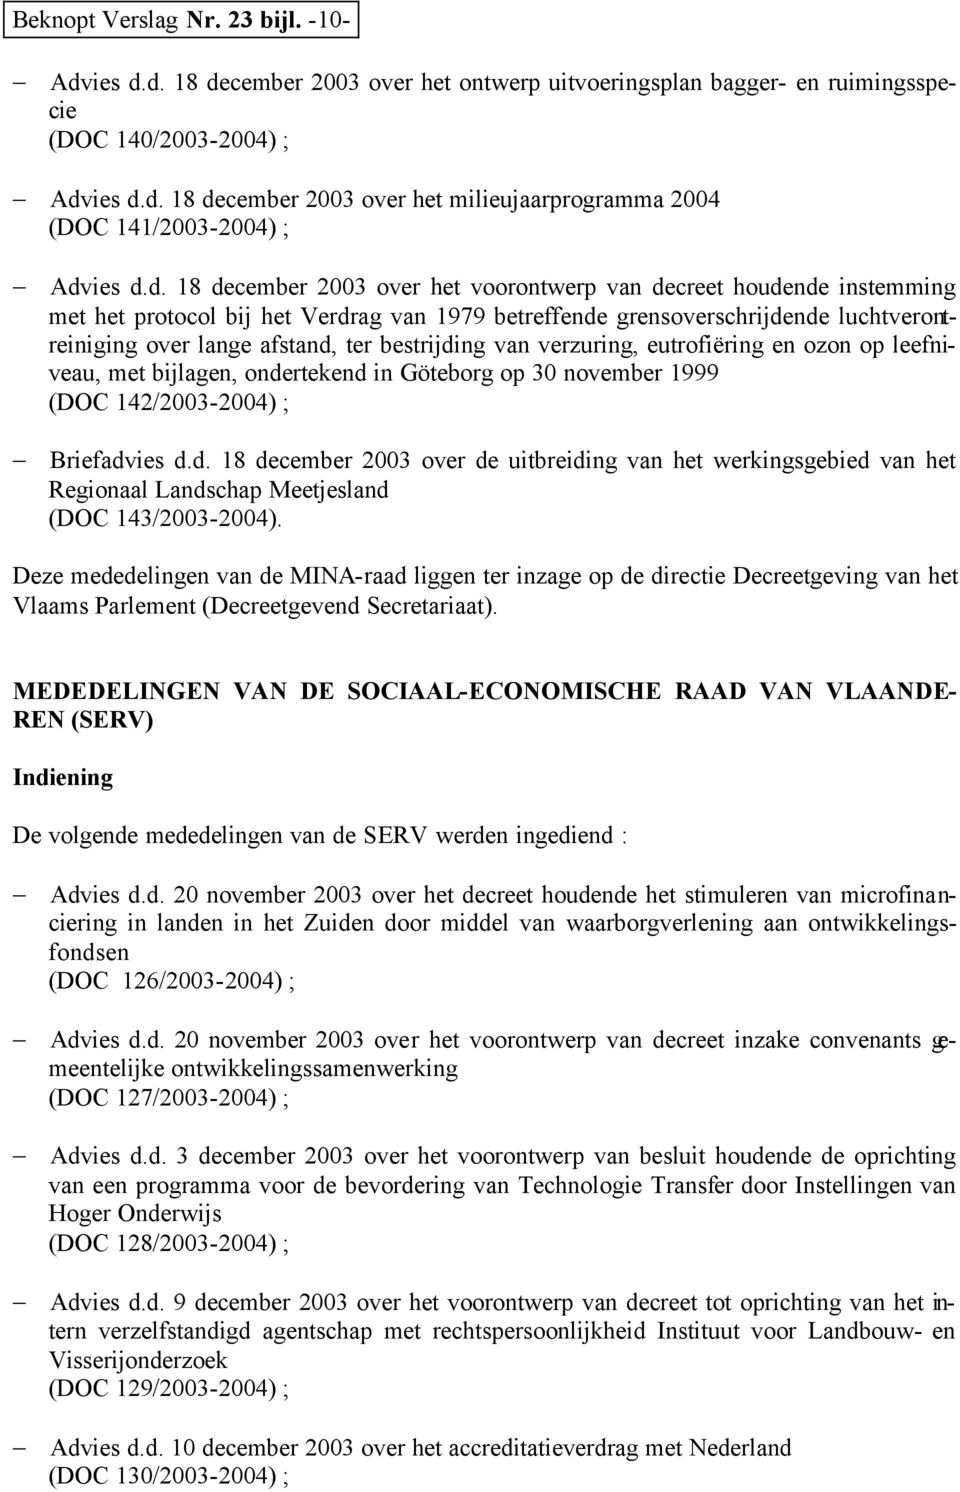 bestrijding van verzuring, eutrofiëring en ozon op leefniveau, met bijlagen, ondertekend in Göteborg op 30 november 1999 (DOC 142/2003-2004) ; Briefadvies d.d. 18 december 2003 over de uitbreiding van het werkingsgebied van het Regionaal Landschap Meetjesland (DOC 143/2003-2004).